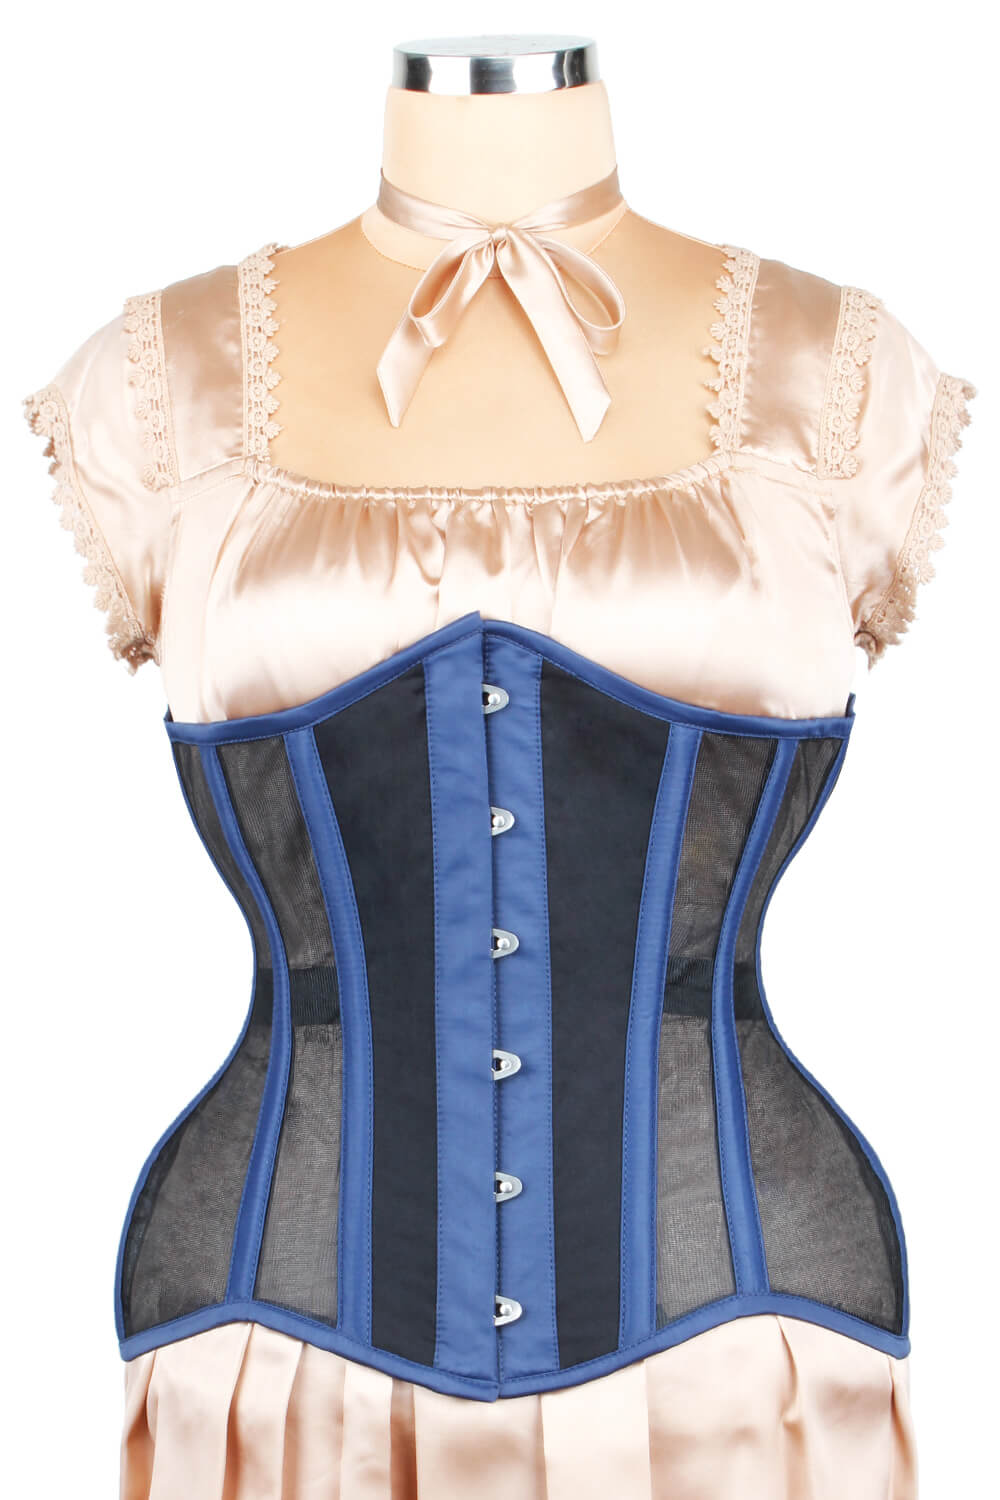 https://www.corsetdeal.com/cdn/shop/products/EL-186_F_Mesh_with_Cotton_Waist_Reducing_Corset_ELC-102.jpg?v=1679054320